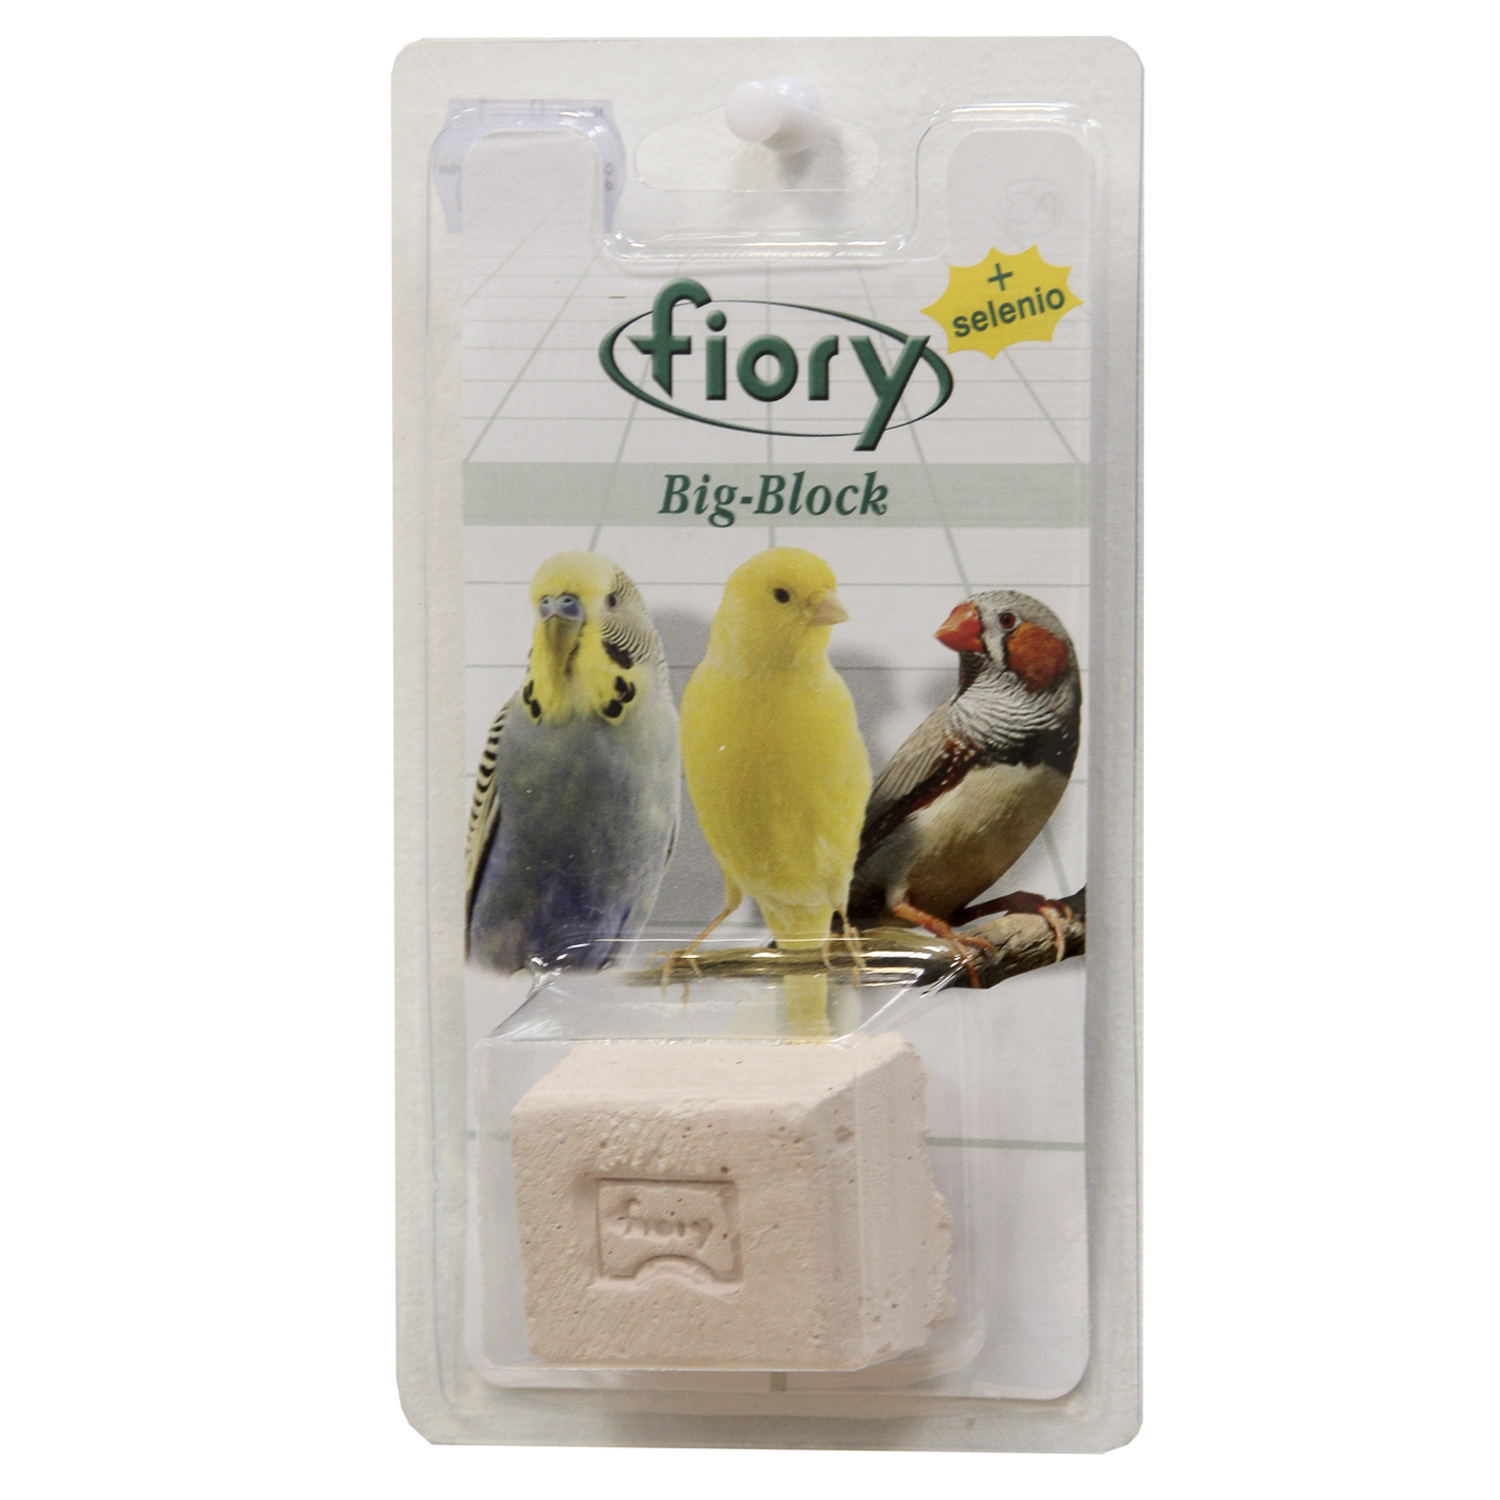 Fiory Fiory био-камень для птиц, с селеном (55 г) fiory био камень для грызунов big block с селеном 55 г